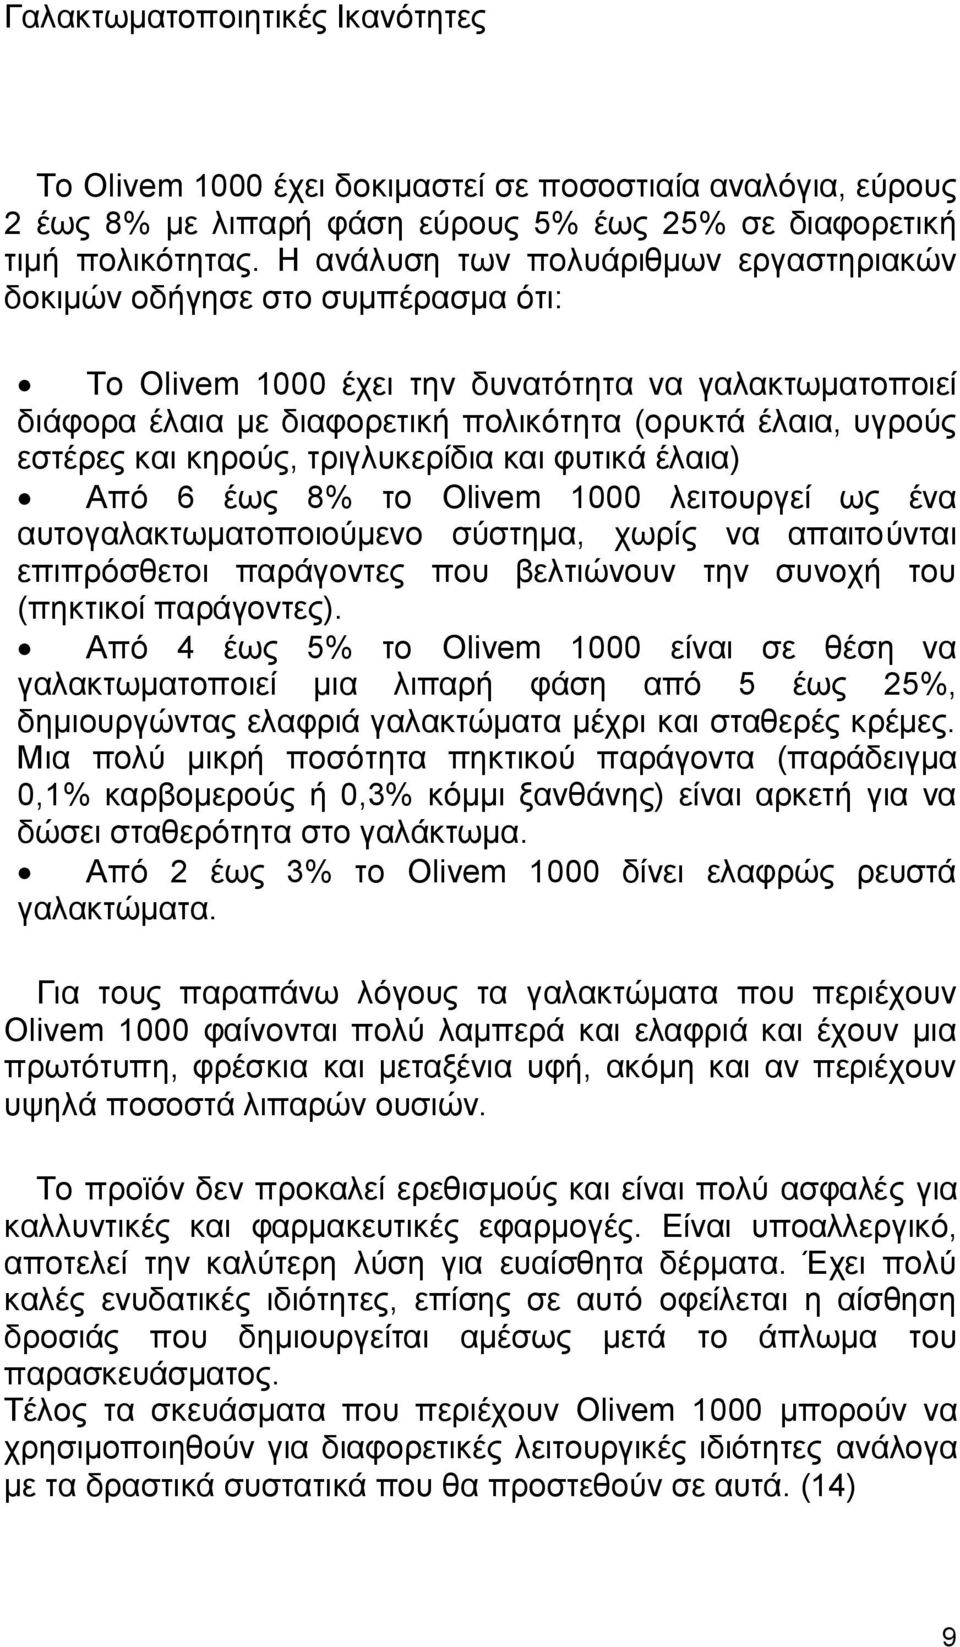 εστέρες και κηρούς, τριγλυκερίδια και φυτικά έλαια) Από 6 έως 8% το Olivem 1000 λειτουργεί ως ένα αυτογαλακτωματοποιούμενο σύστημα, χωρίς να απαιτούνται επιπρόσθετοι παράγοντες που βελτιώνουν την